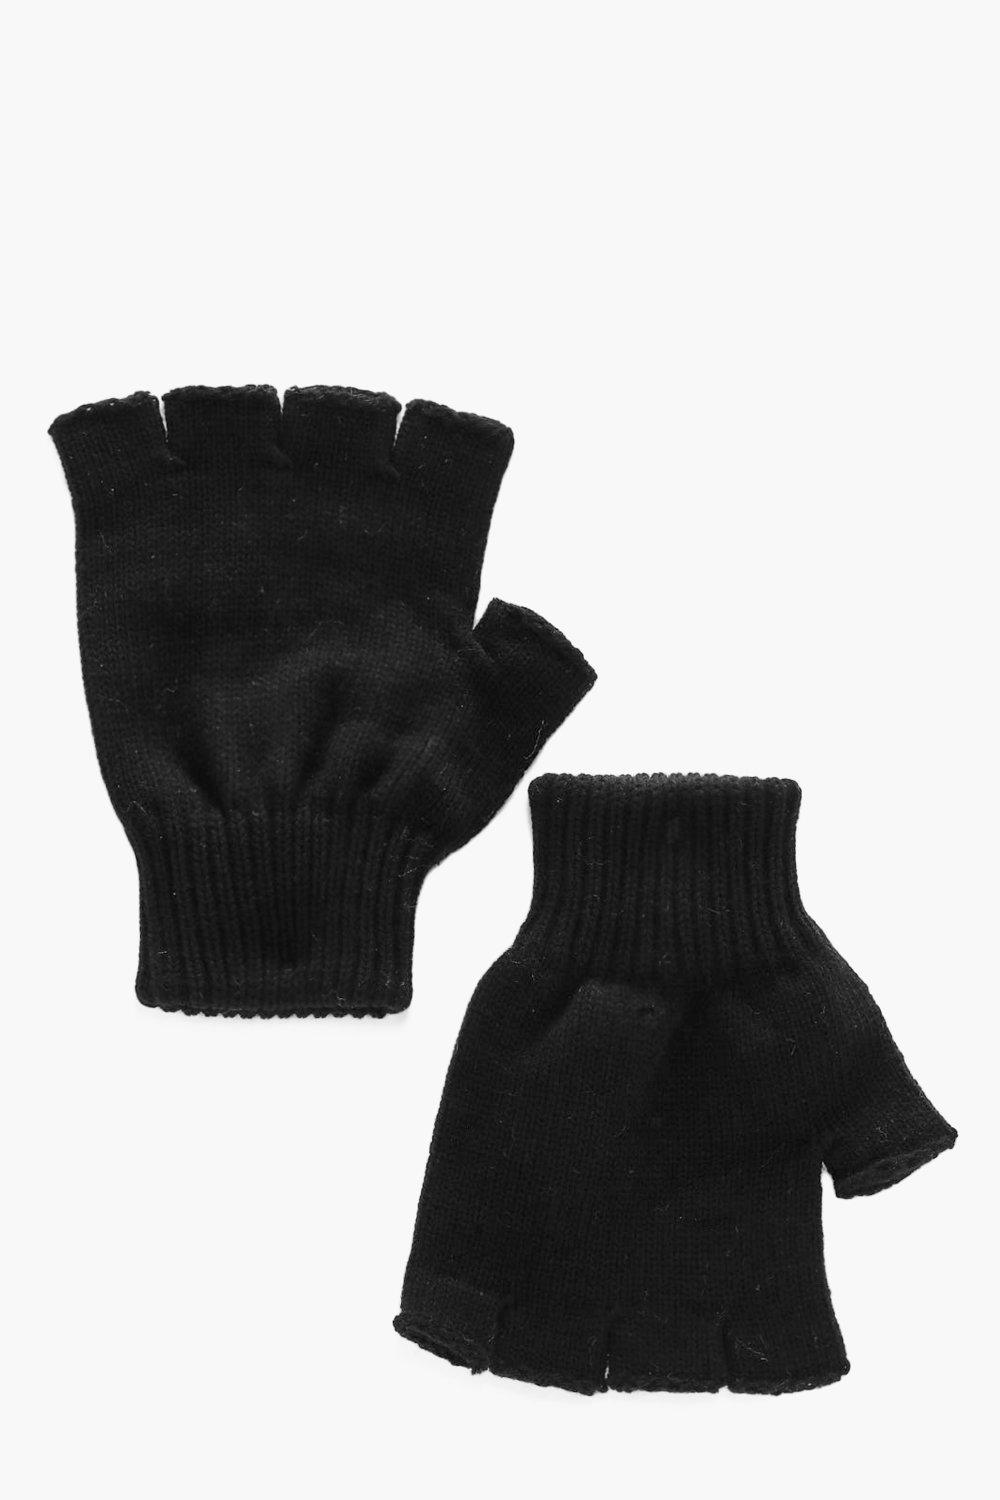 fingerless gloves ireland